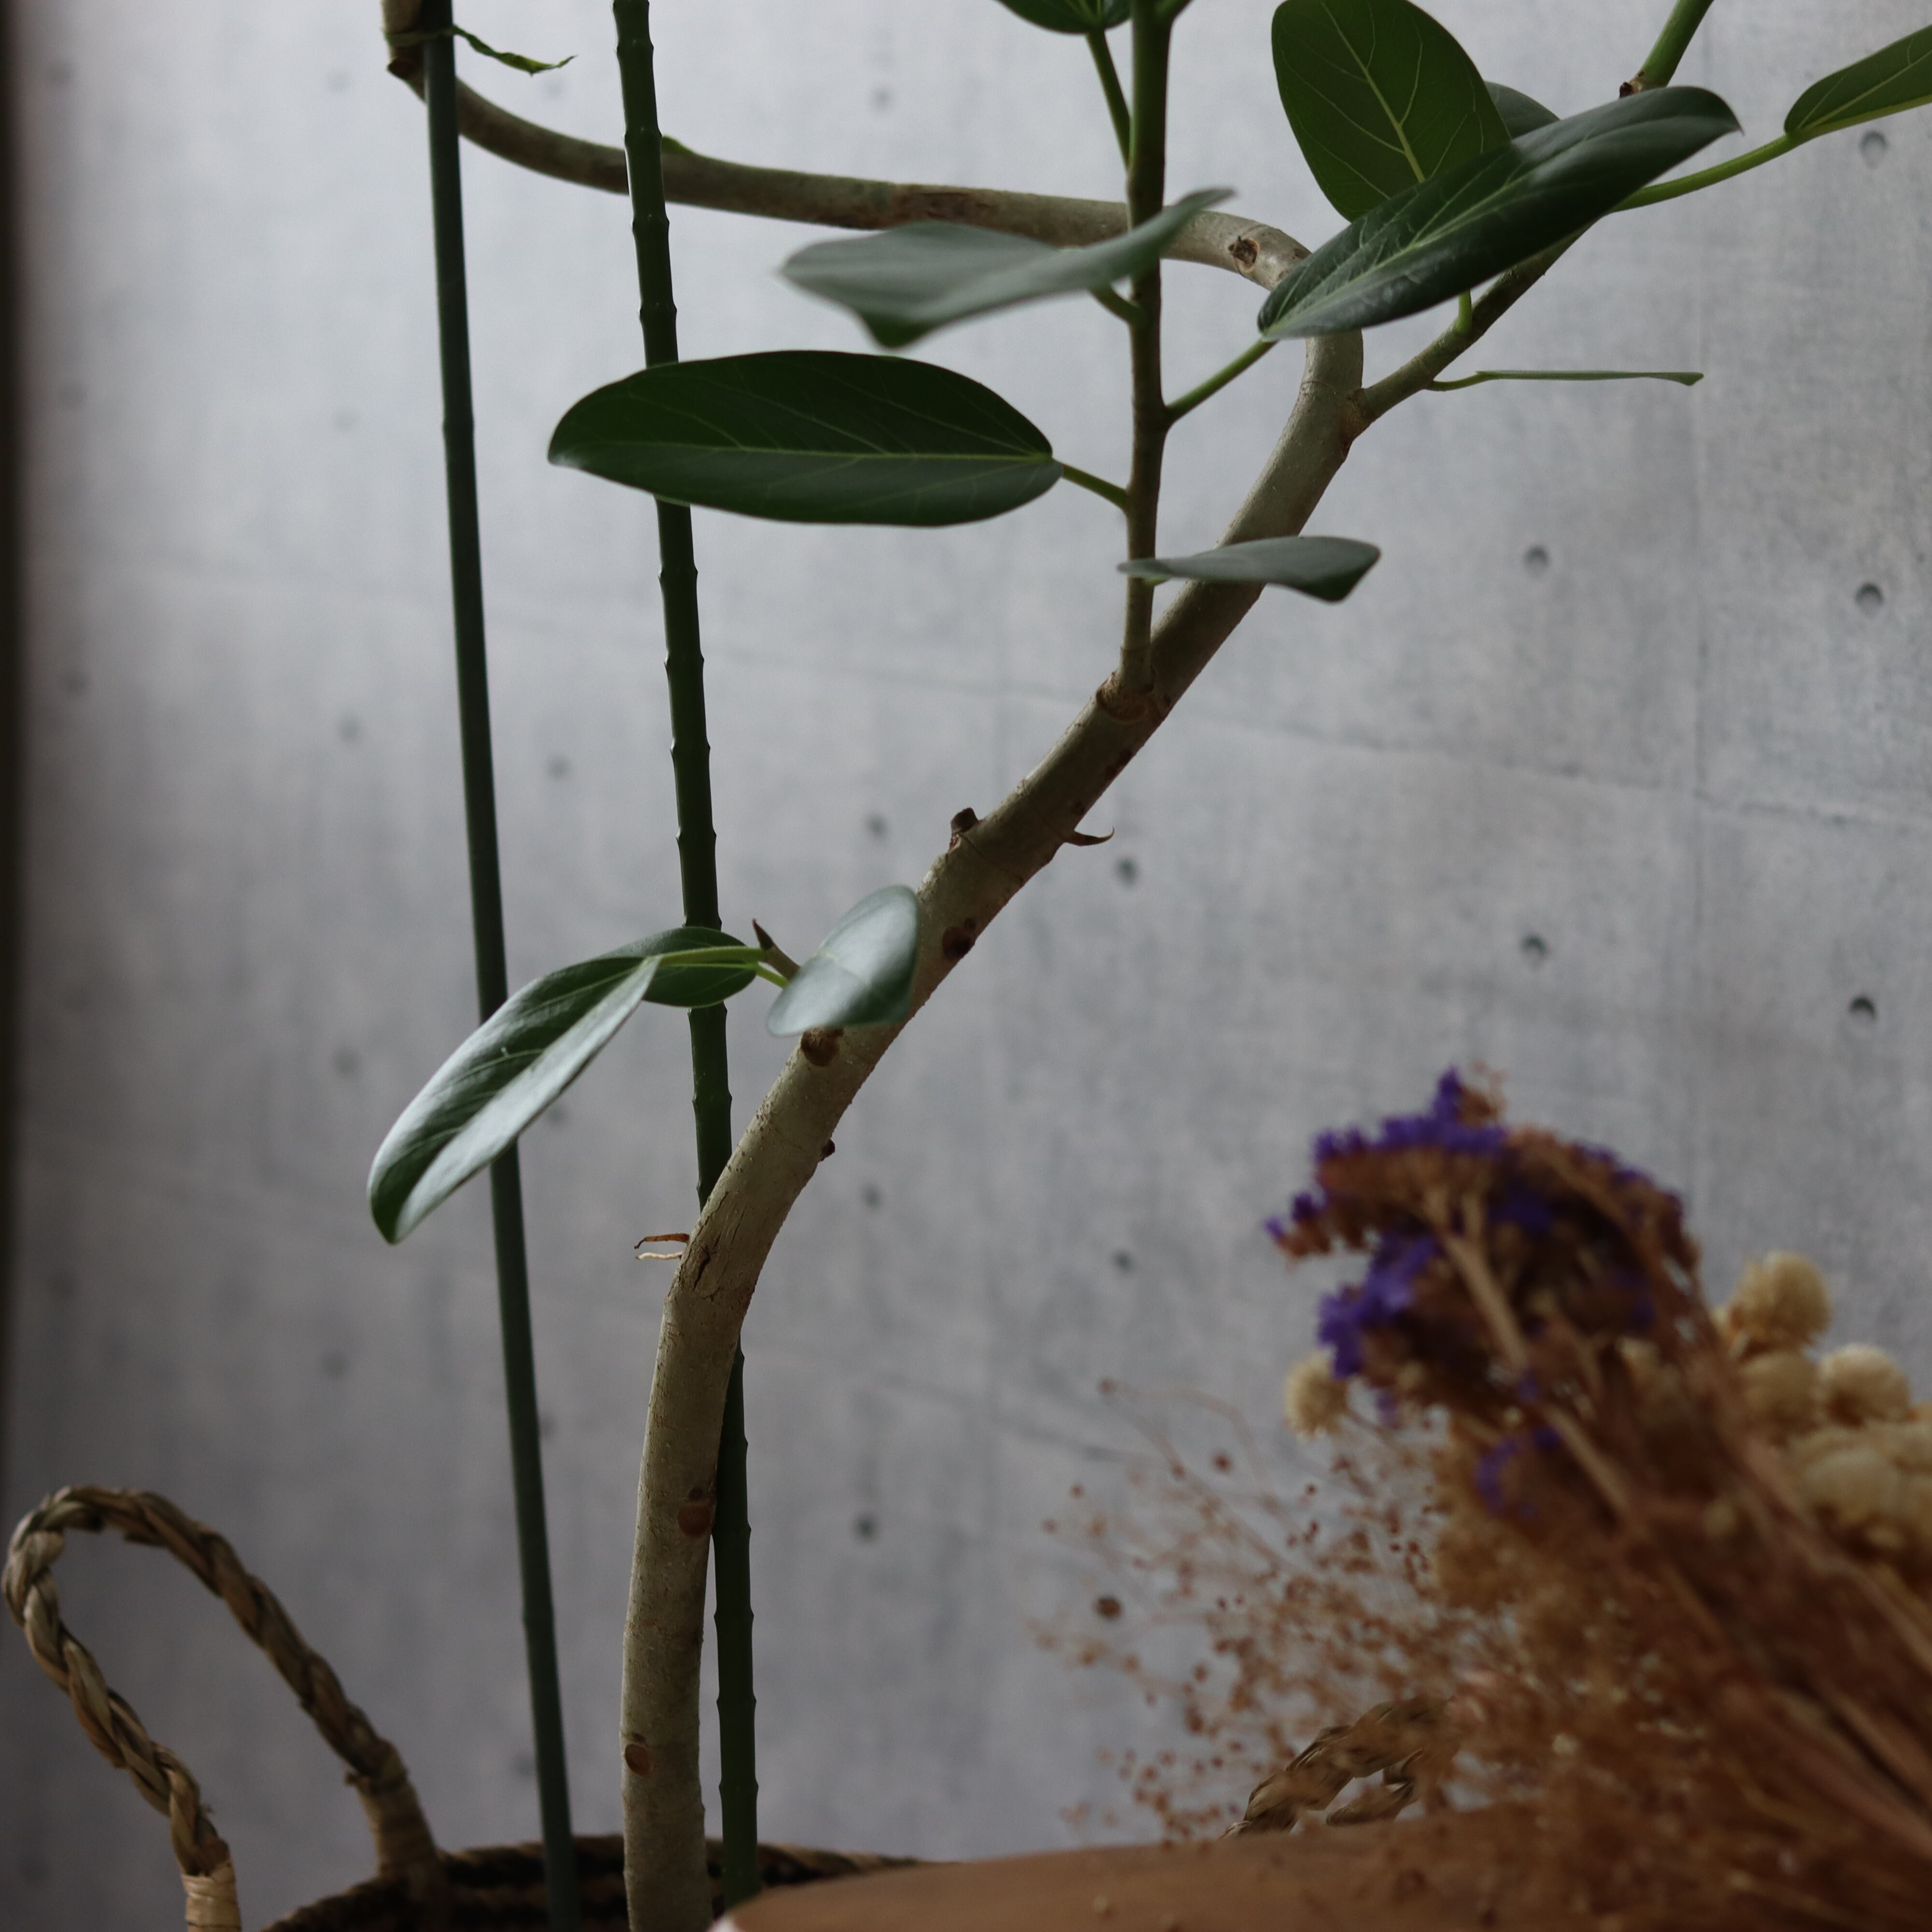 【大型螺旋仕立て】 フィカス ベンガレンシス 曲がり仕立て 観葉植物 室内